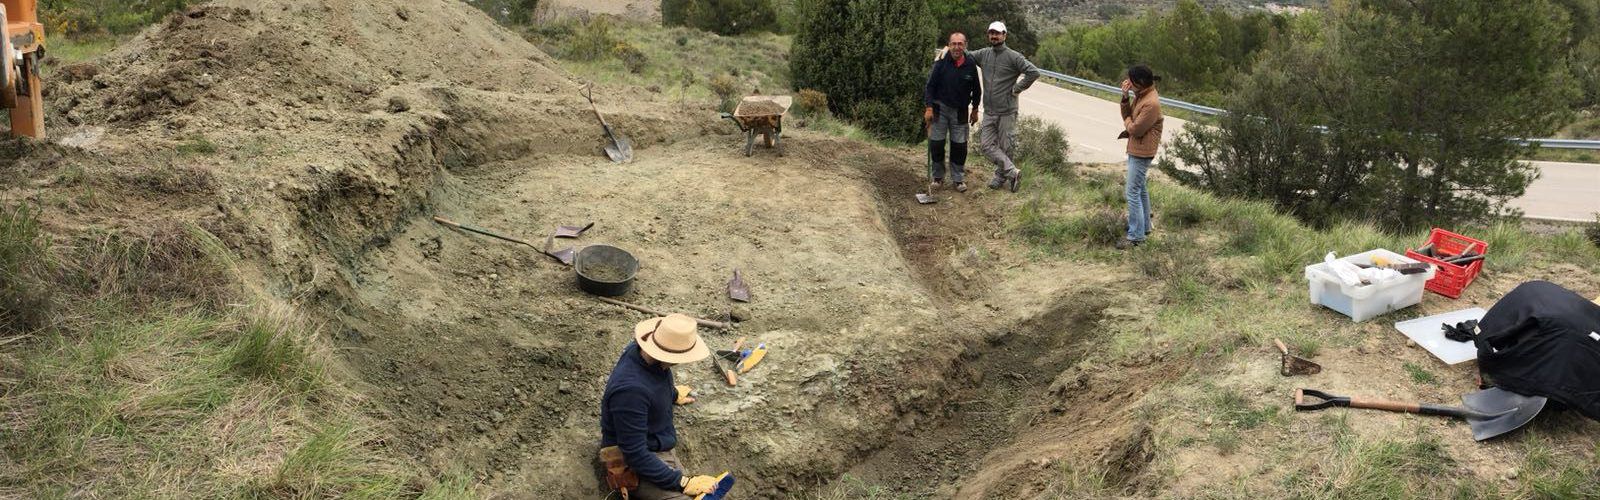 Hallan en Vallibona restos fósiles de hace 125 millones de años